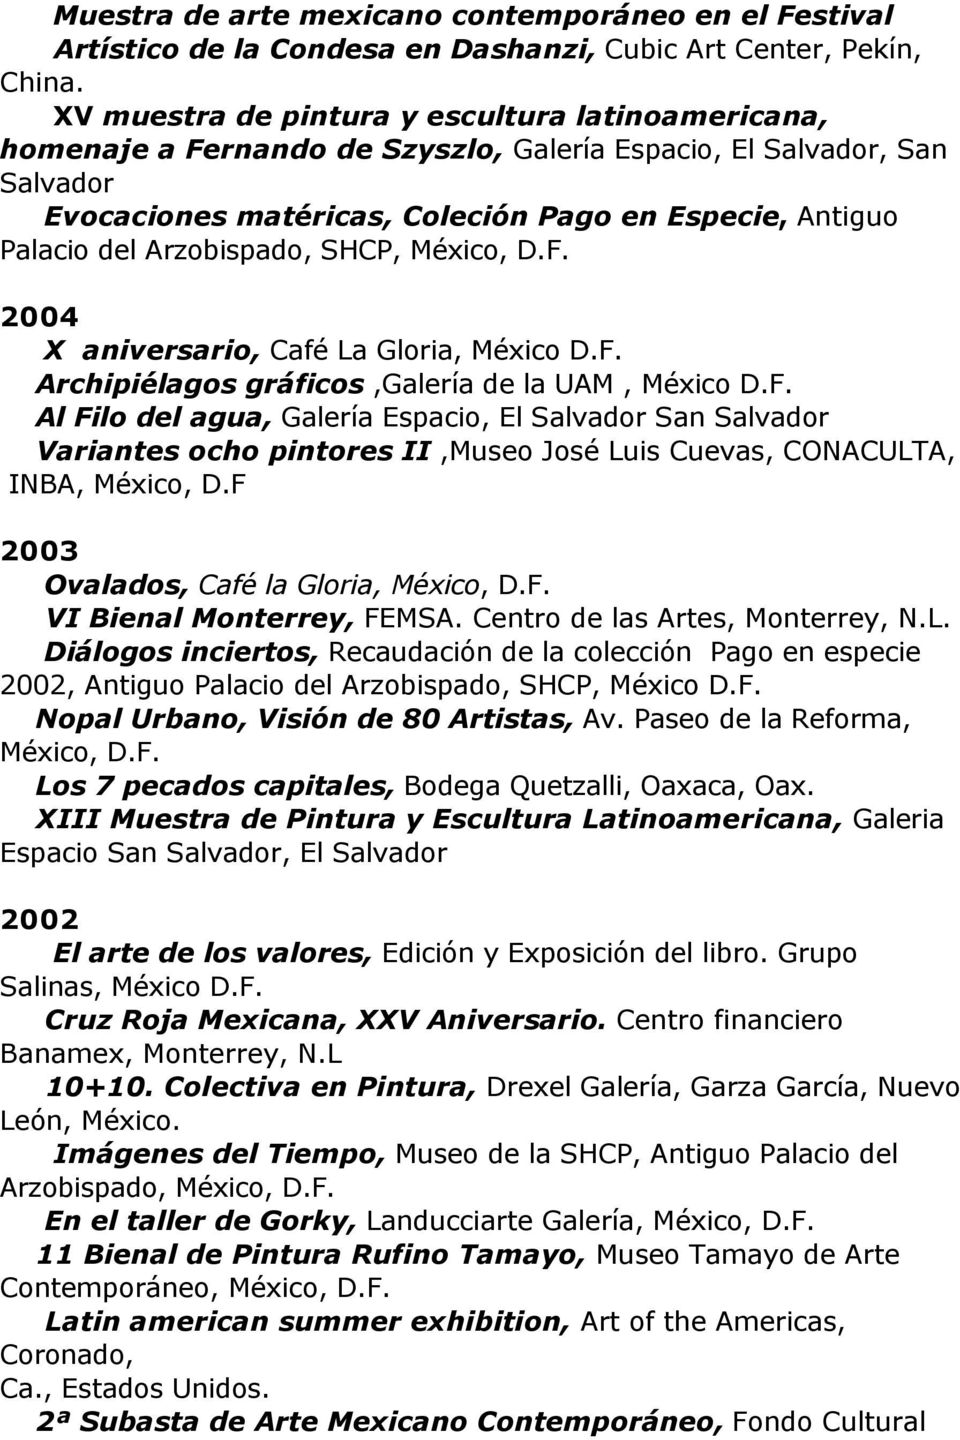 Arzobispado, SHCP, 2004 X aniversario, Café La Gloria, México Archipiélagos gráficos,galería de la UAM, México Al Filo del agua, Galería Espacio, El Salvador San Salvador Variantes ocho pintores